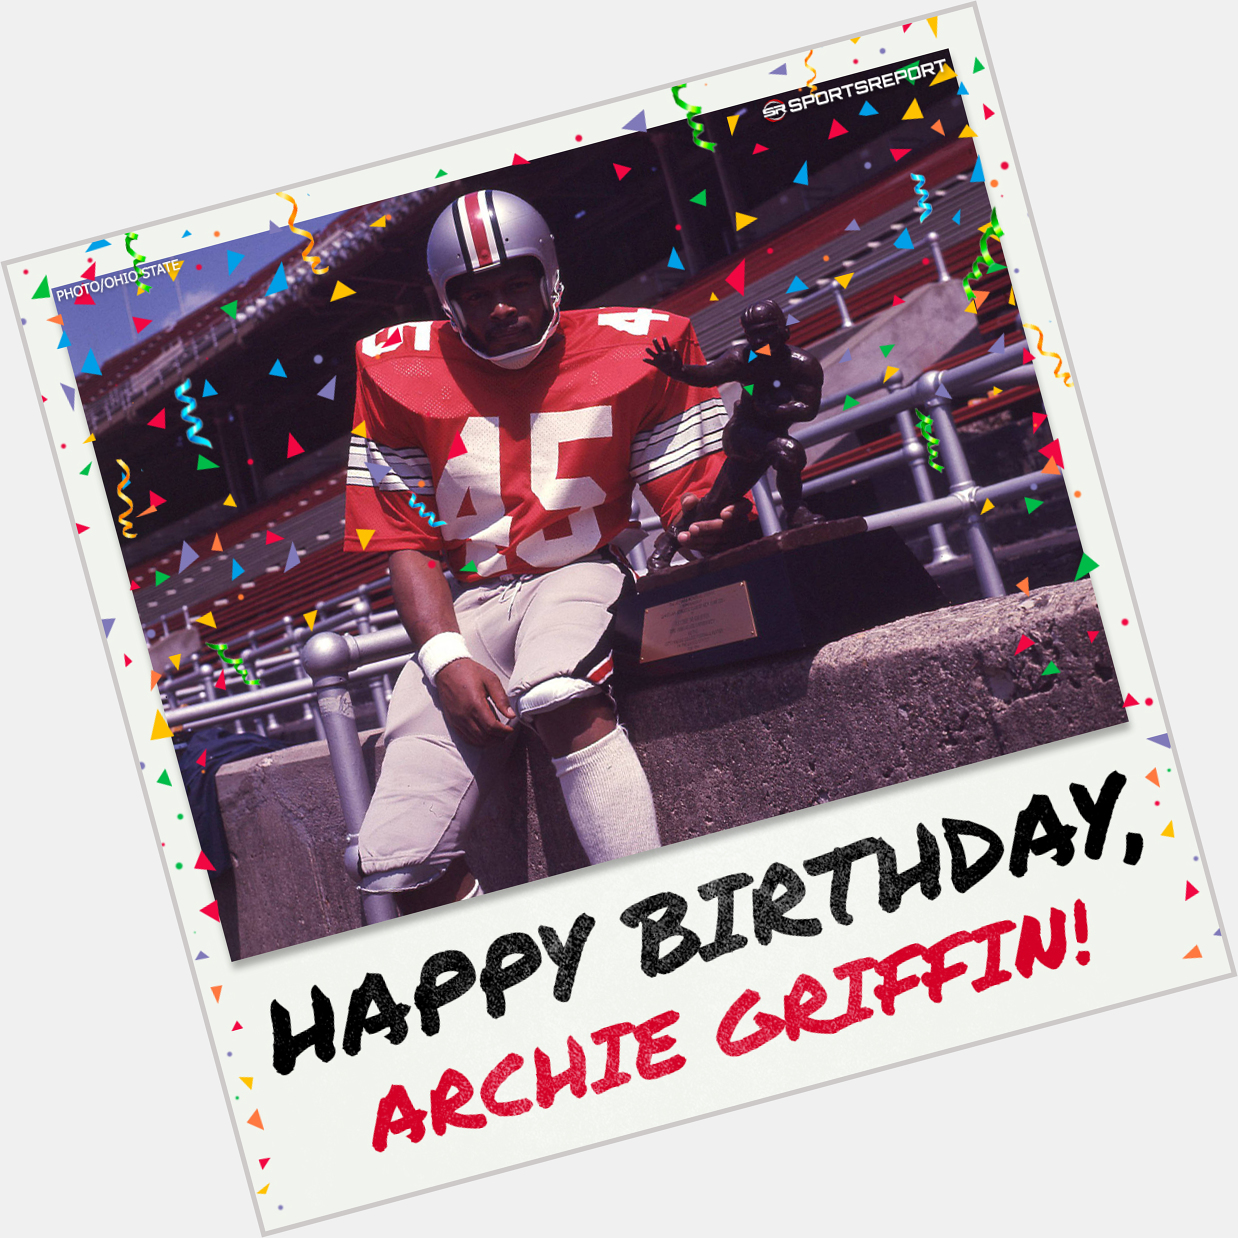 Happy Birthday to  Legend, Archie Griffin! 